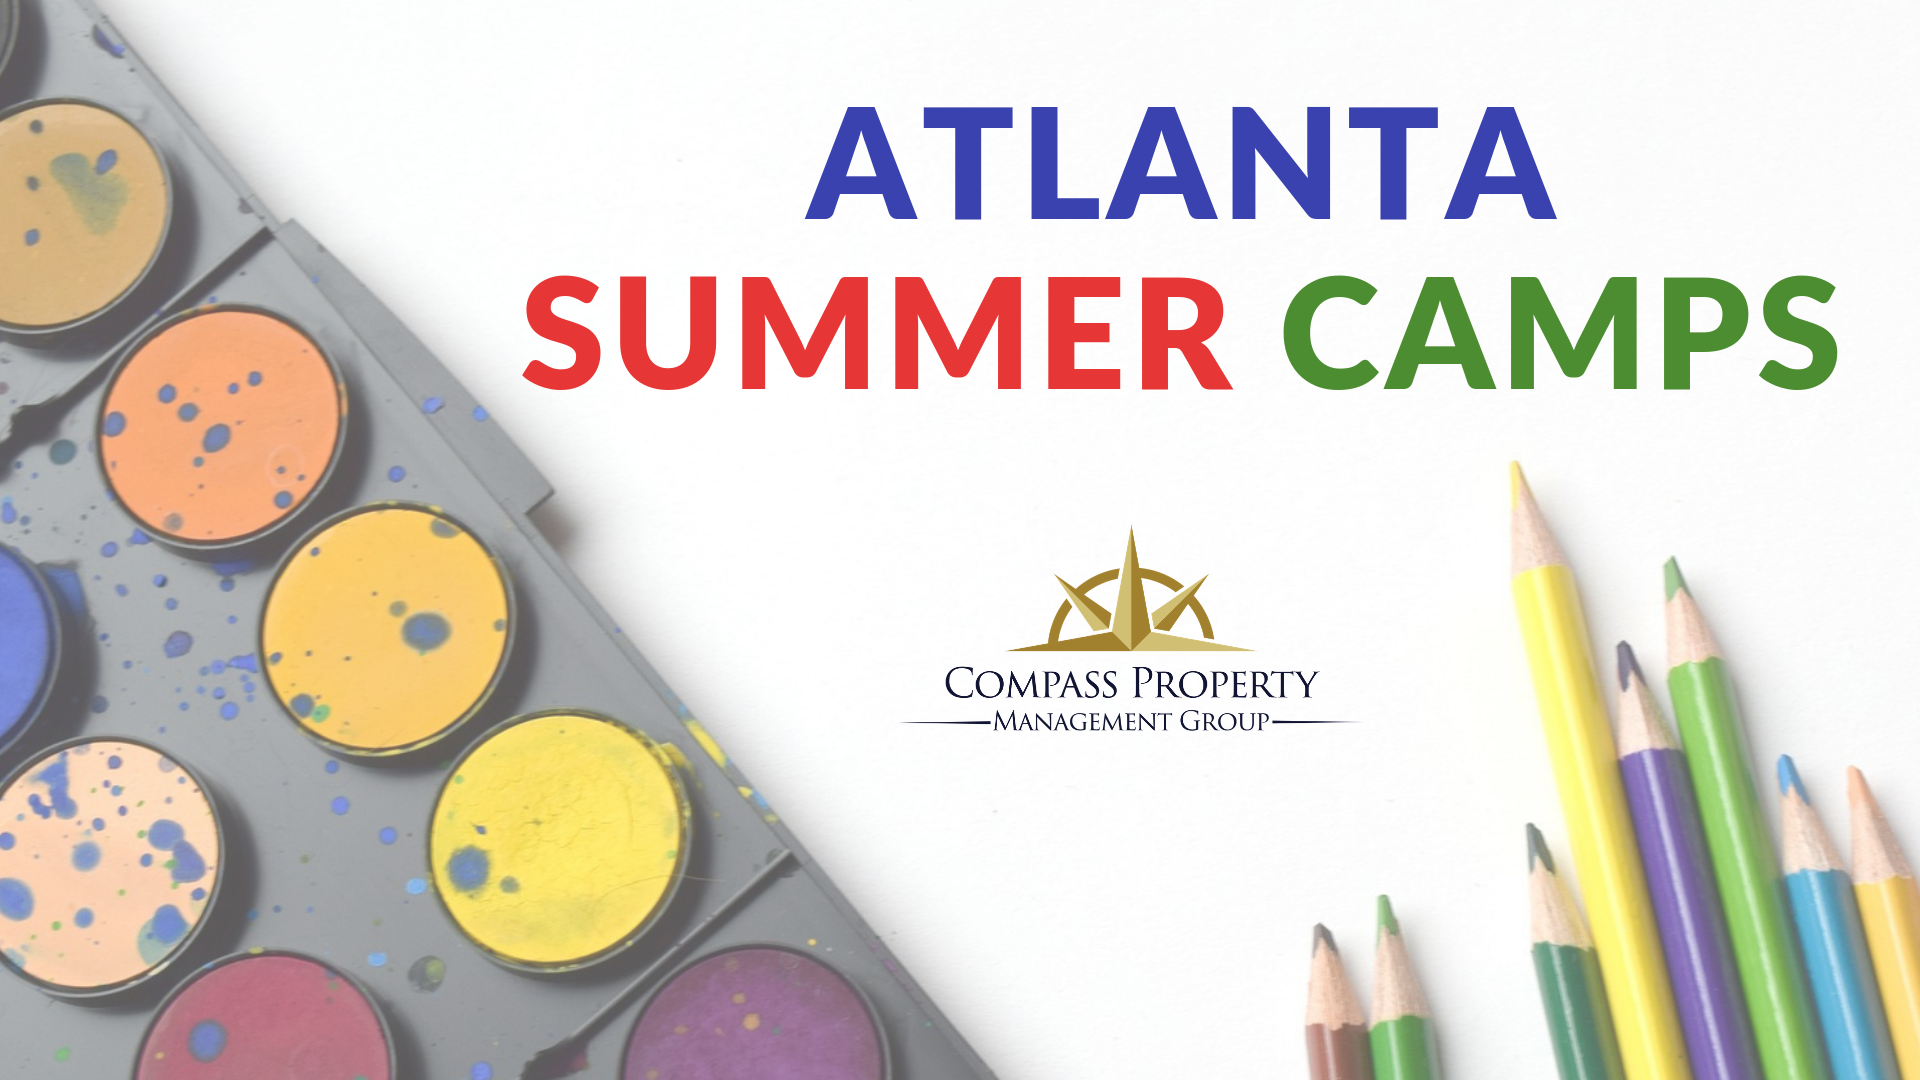 Atlanta Summer Camps Compass Property Management